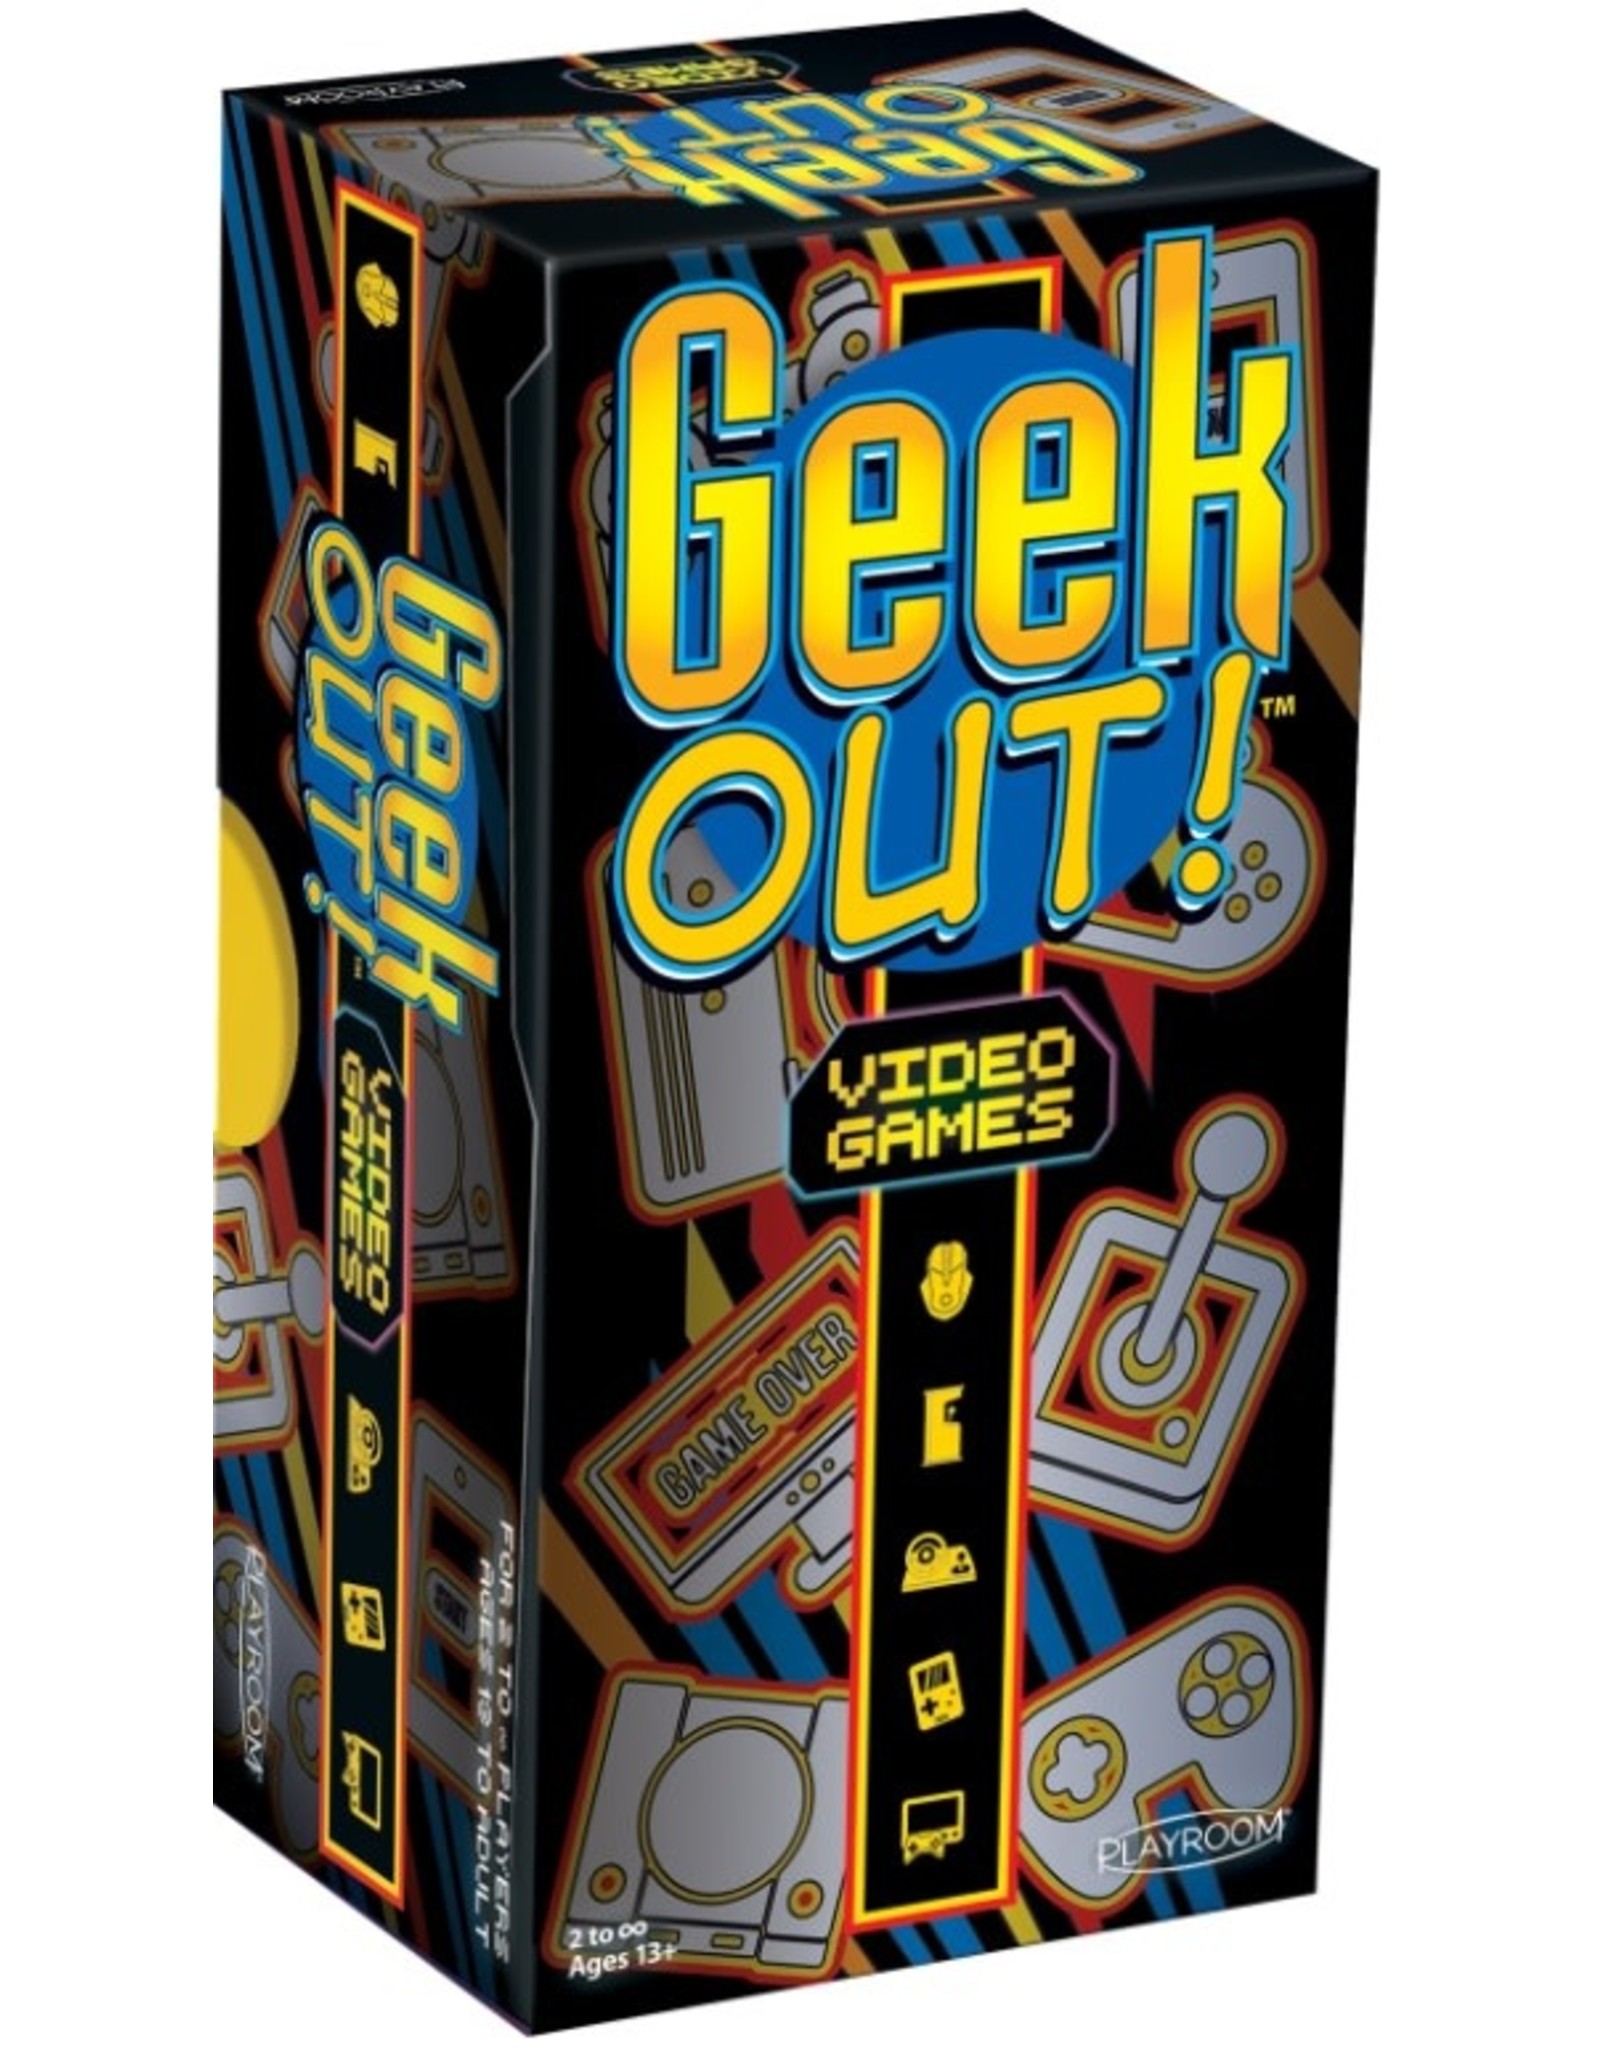 Playroom Geek Out! Video Games